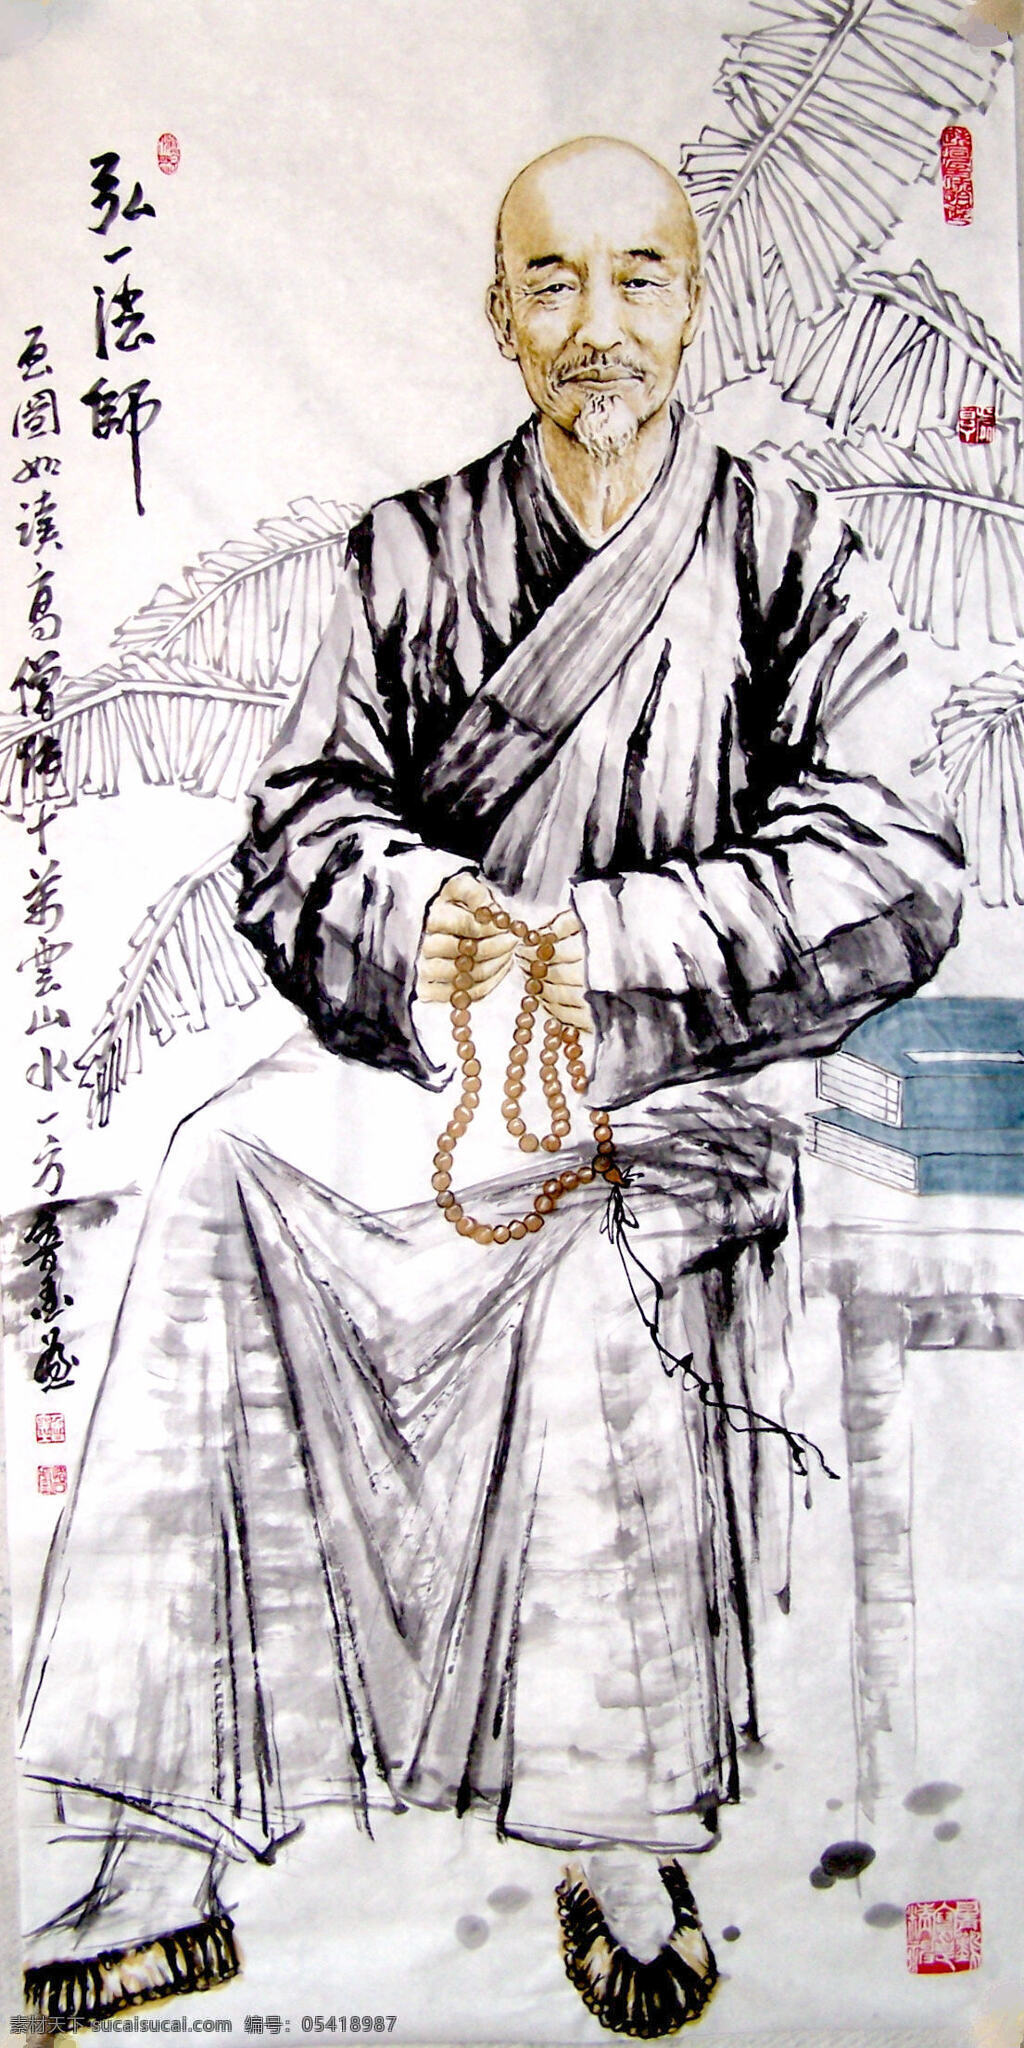 文 魂 弘一 法师 设计素材 人物画篇 中国画篇 书画美术 白色